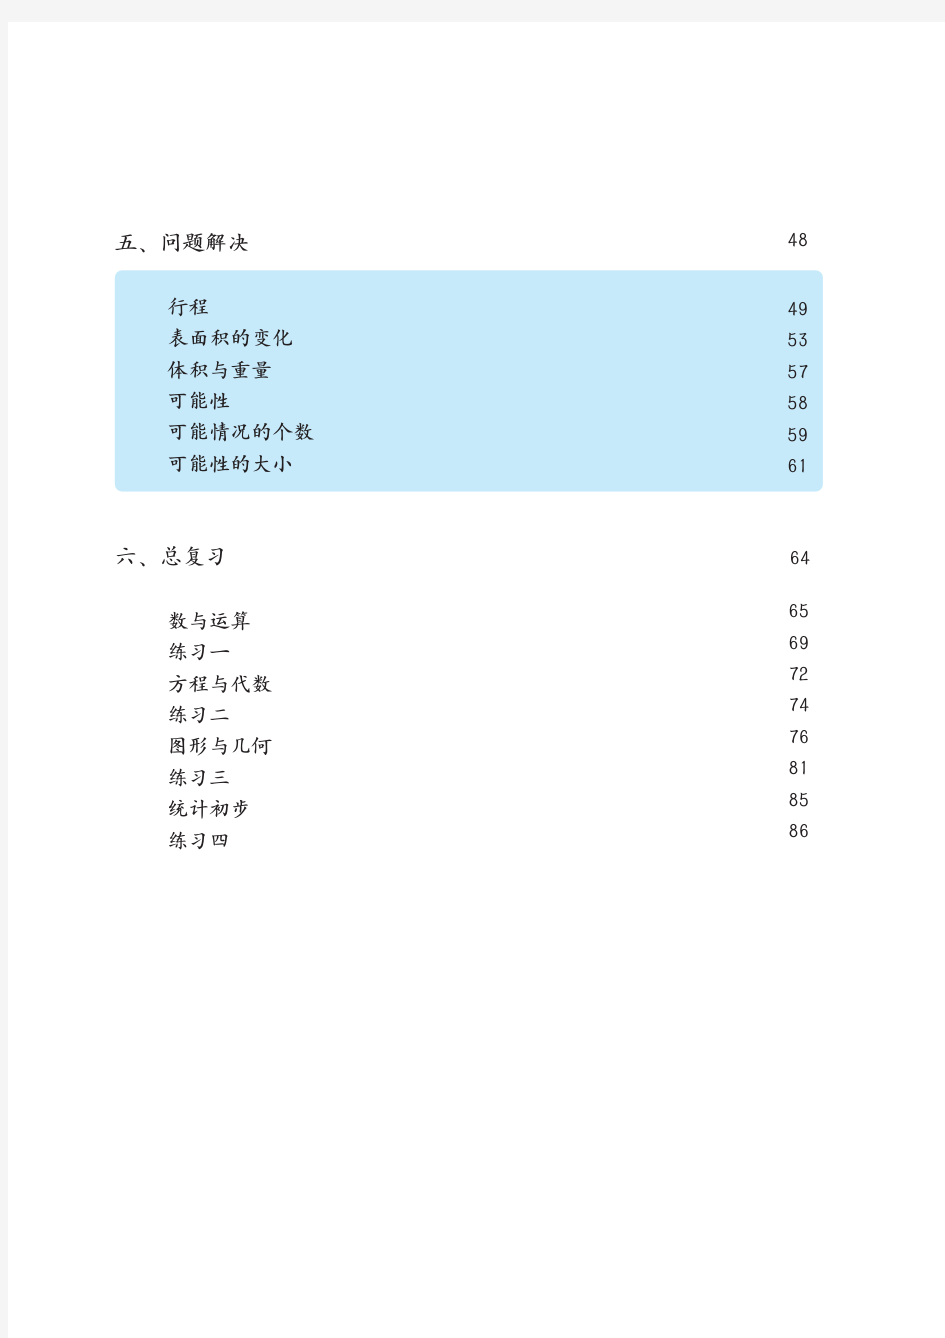 上海市五年级数学教材(前半部分)